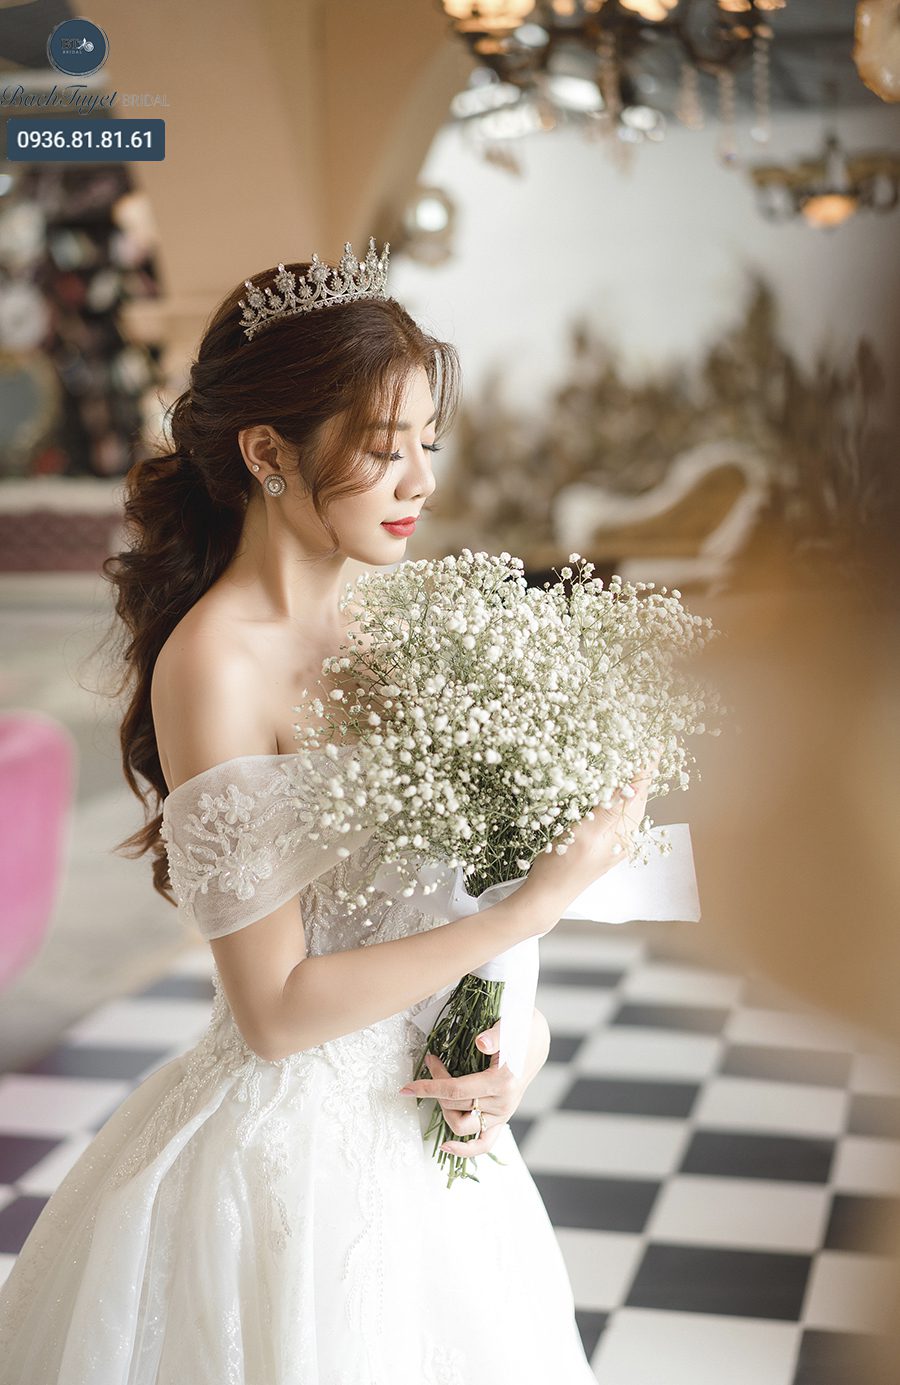 Một chiếc tóc cô dâu xõa nhẹ nhàng và đẹp lộng lẫy sẽ khiến cho cô dâu tỏa sáng trong ngày trọng đại. Hãy đến và chiêm ngưỡng hình ảnh tuyệt đẹp này để lấy những ý tưởng tuyệt vời cho ngày cưới của bạn.